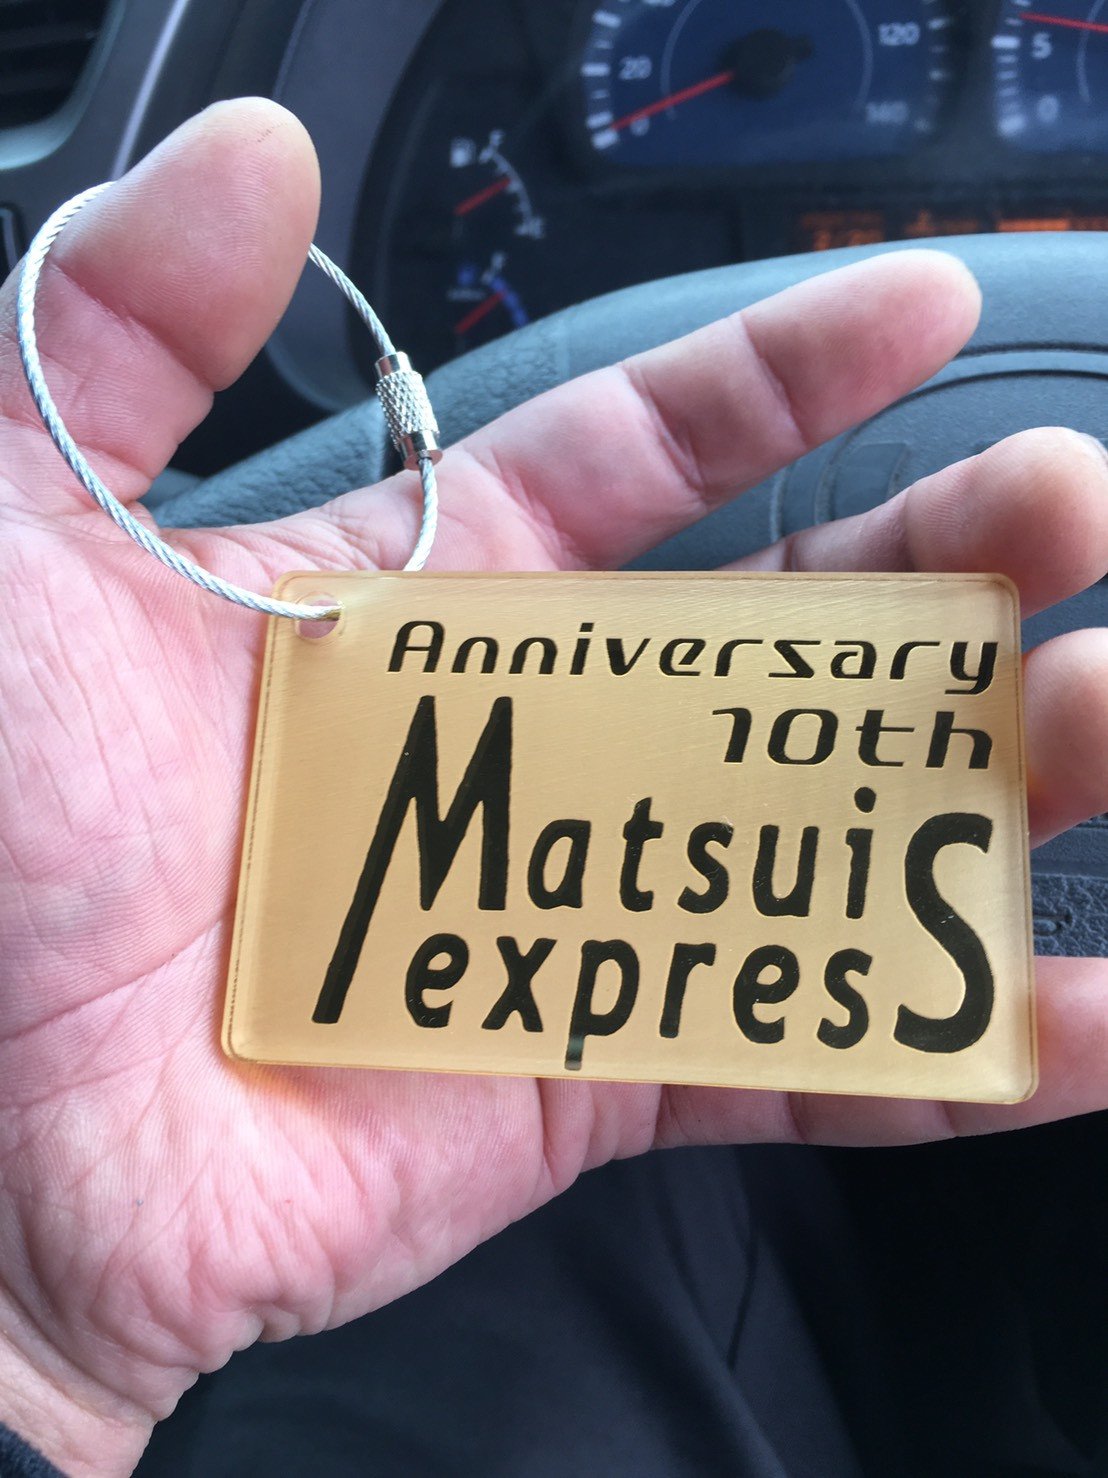 名古屋の運送会社 10周年記念品